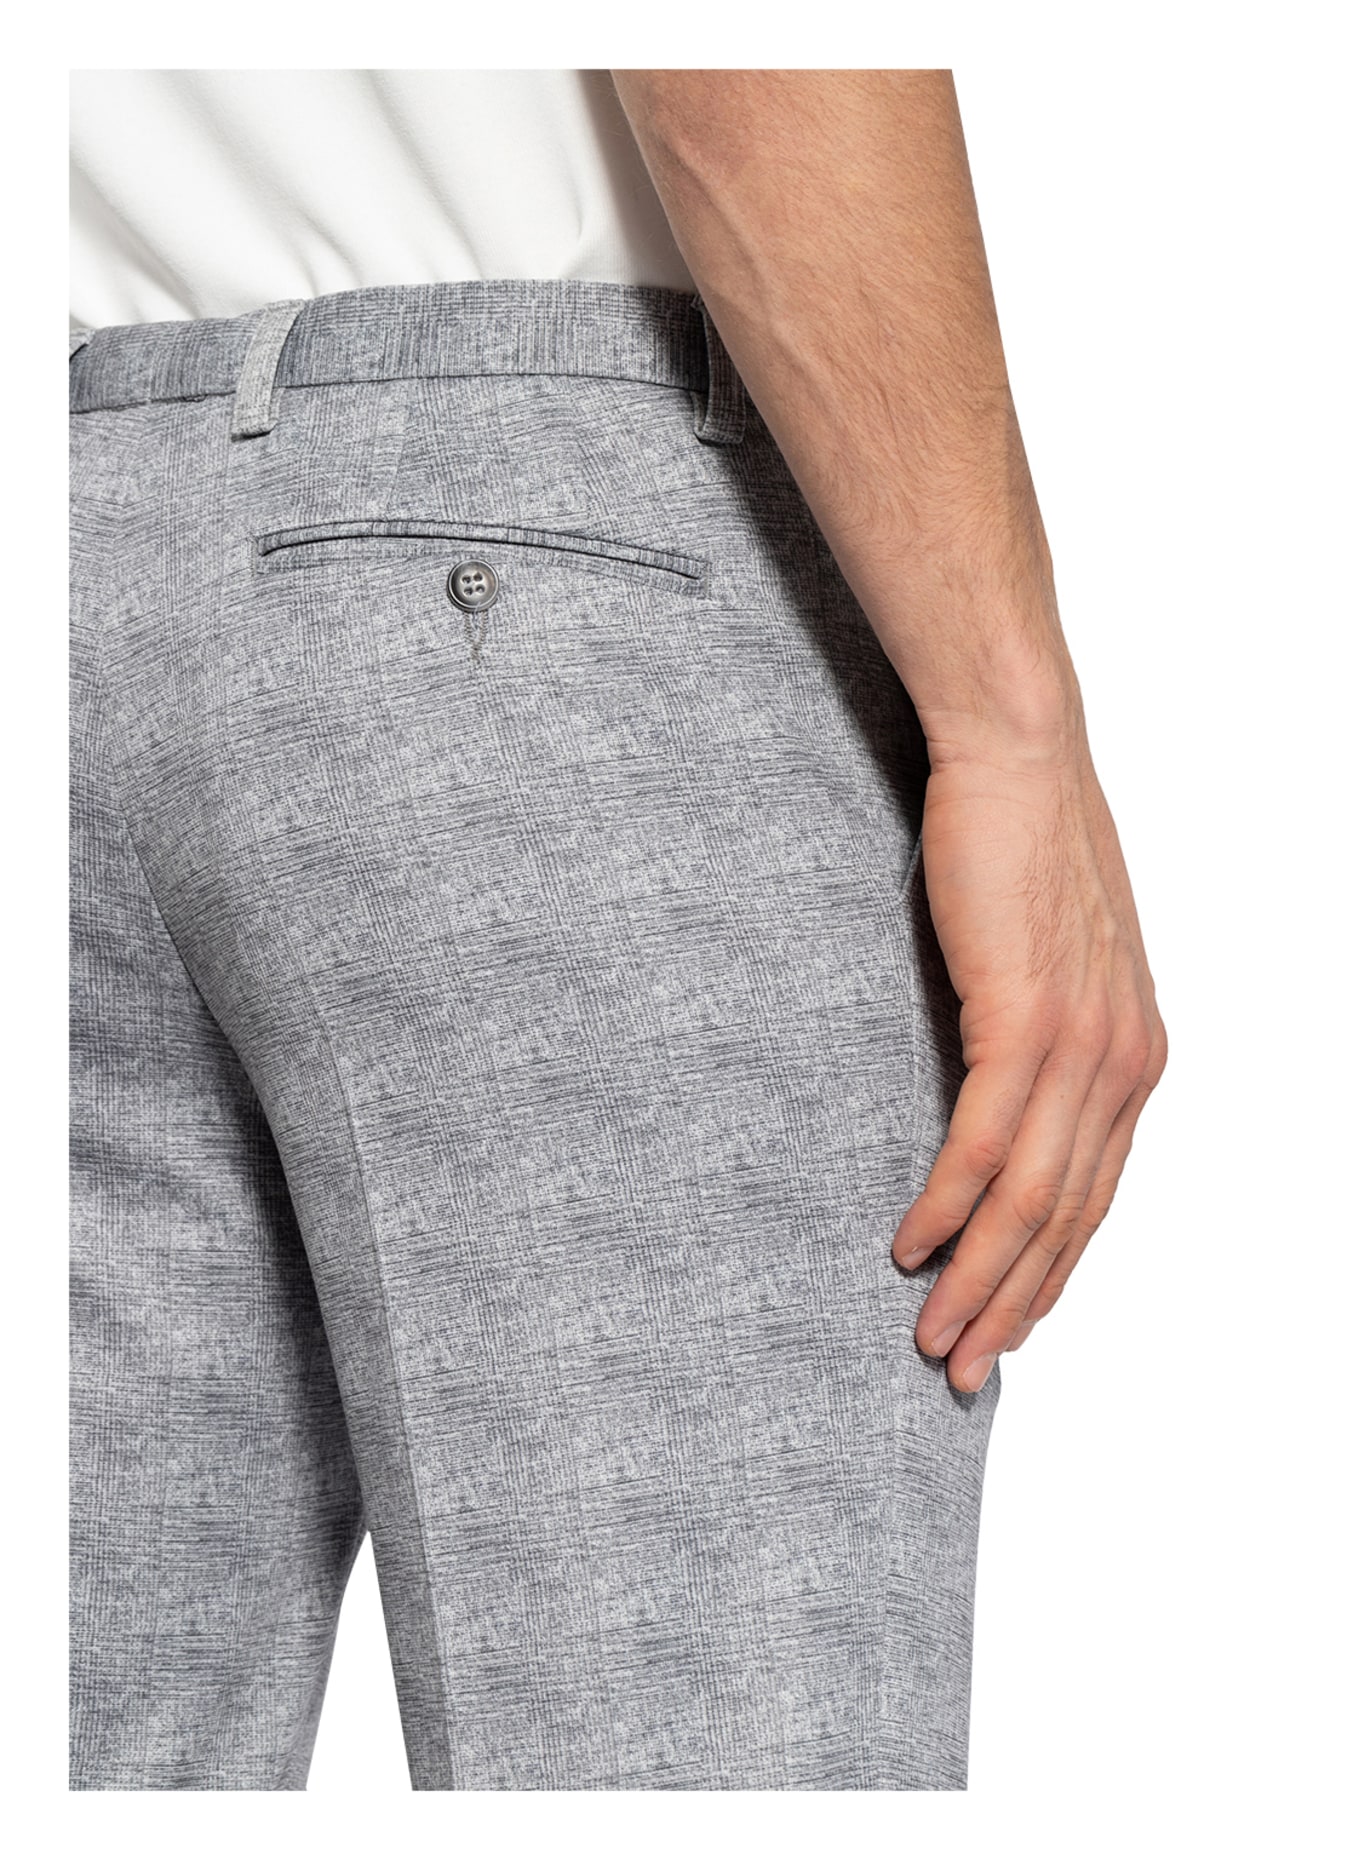 PAUL Suit trousers slim fit, Color: 330 GRAU (Image 6)